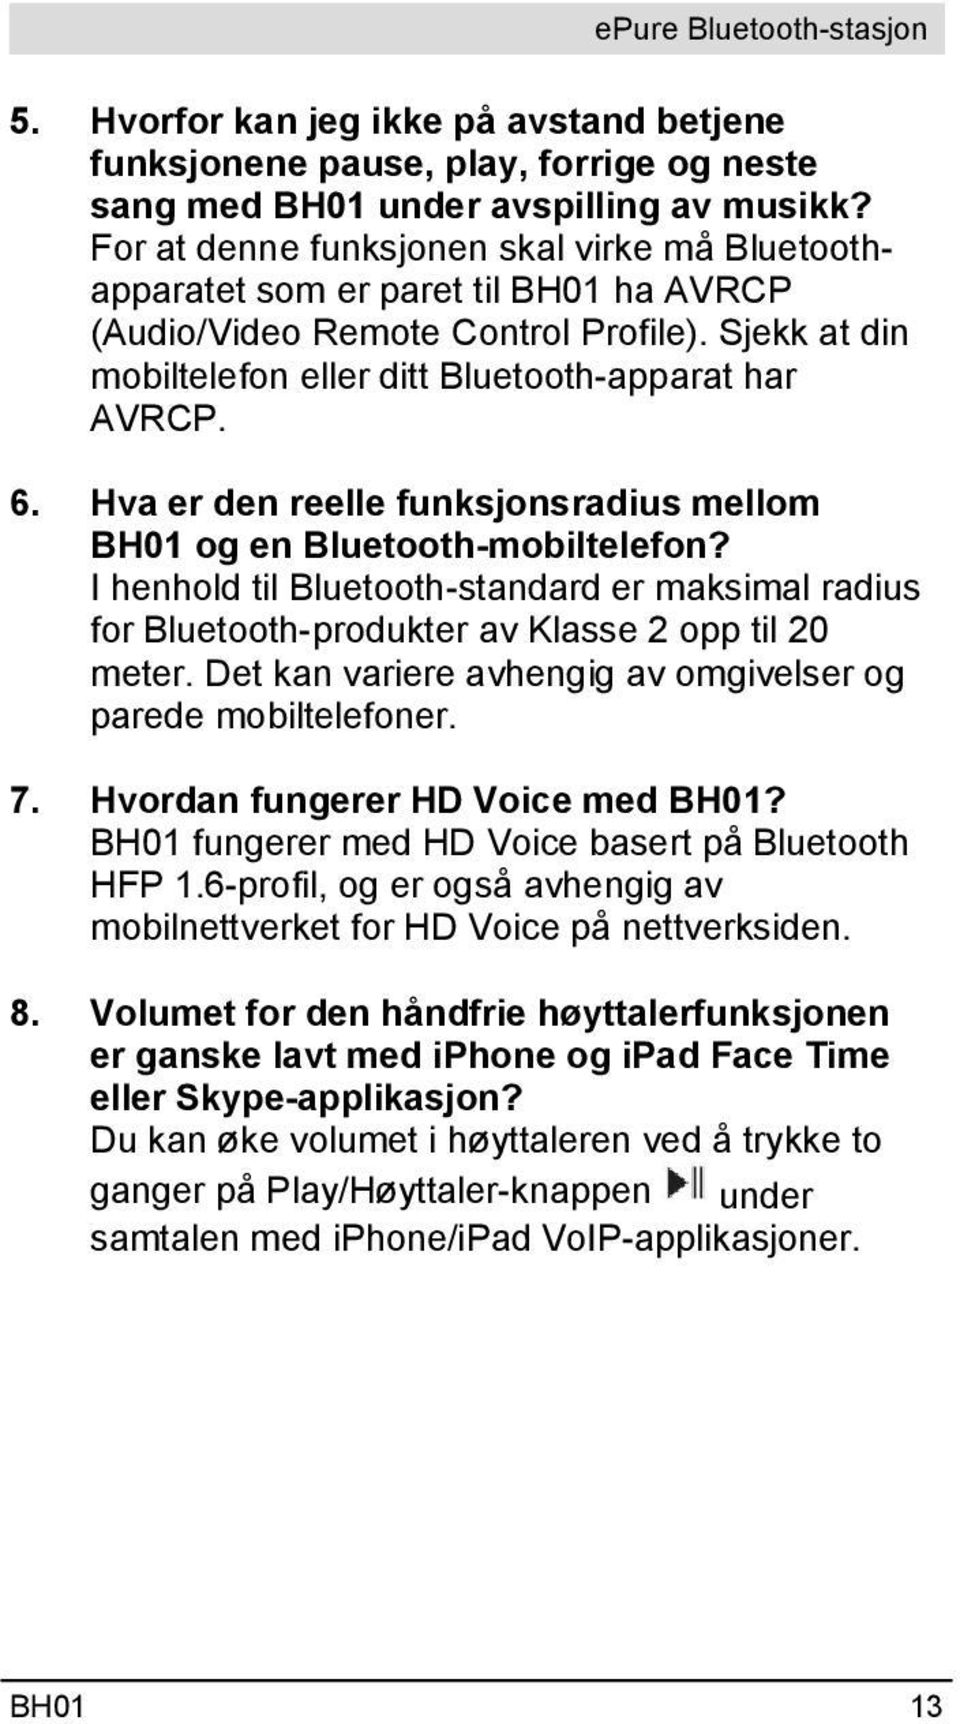 Hva er den reelle funksjonsradius mellom BH01 og en Bluetooth-mobiltelefon? I henhold til Bluetooth-standard er maksimal radius for Bluetooth-produkter av Klasse 2 opp til 20 meter.